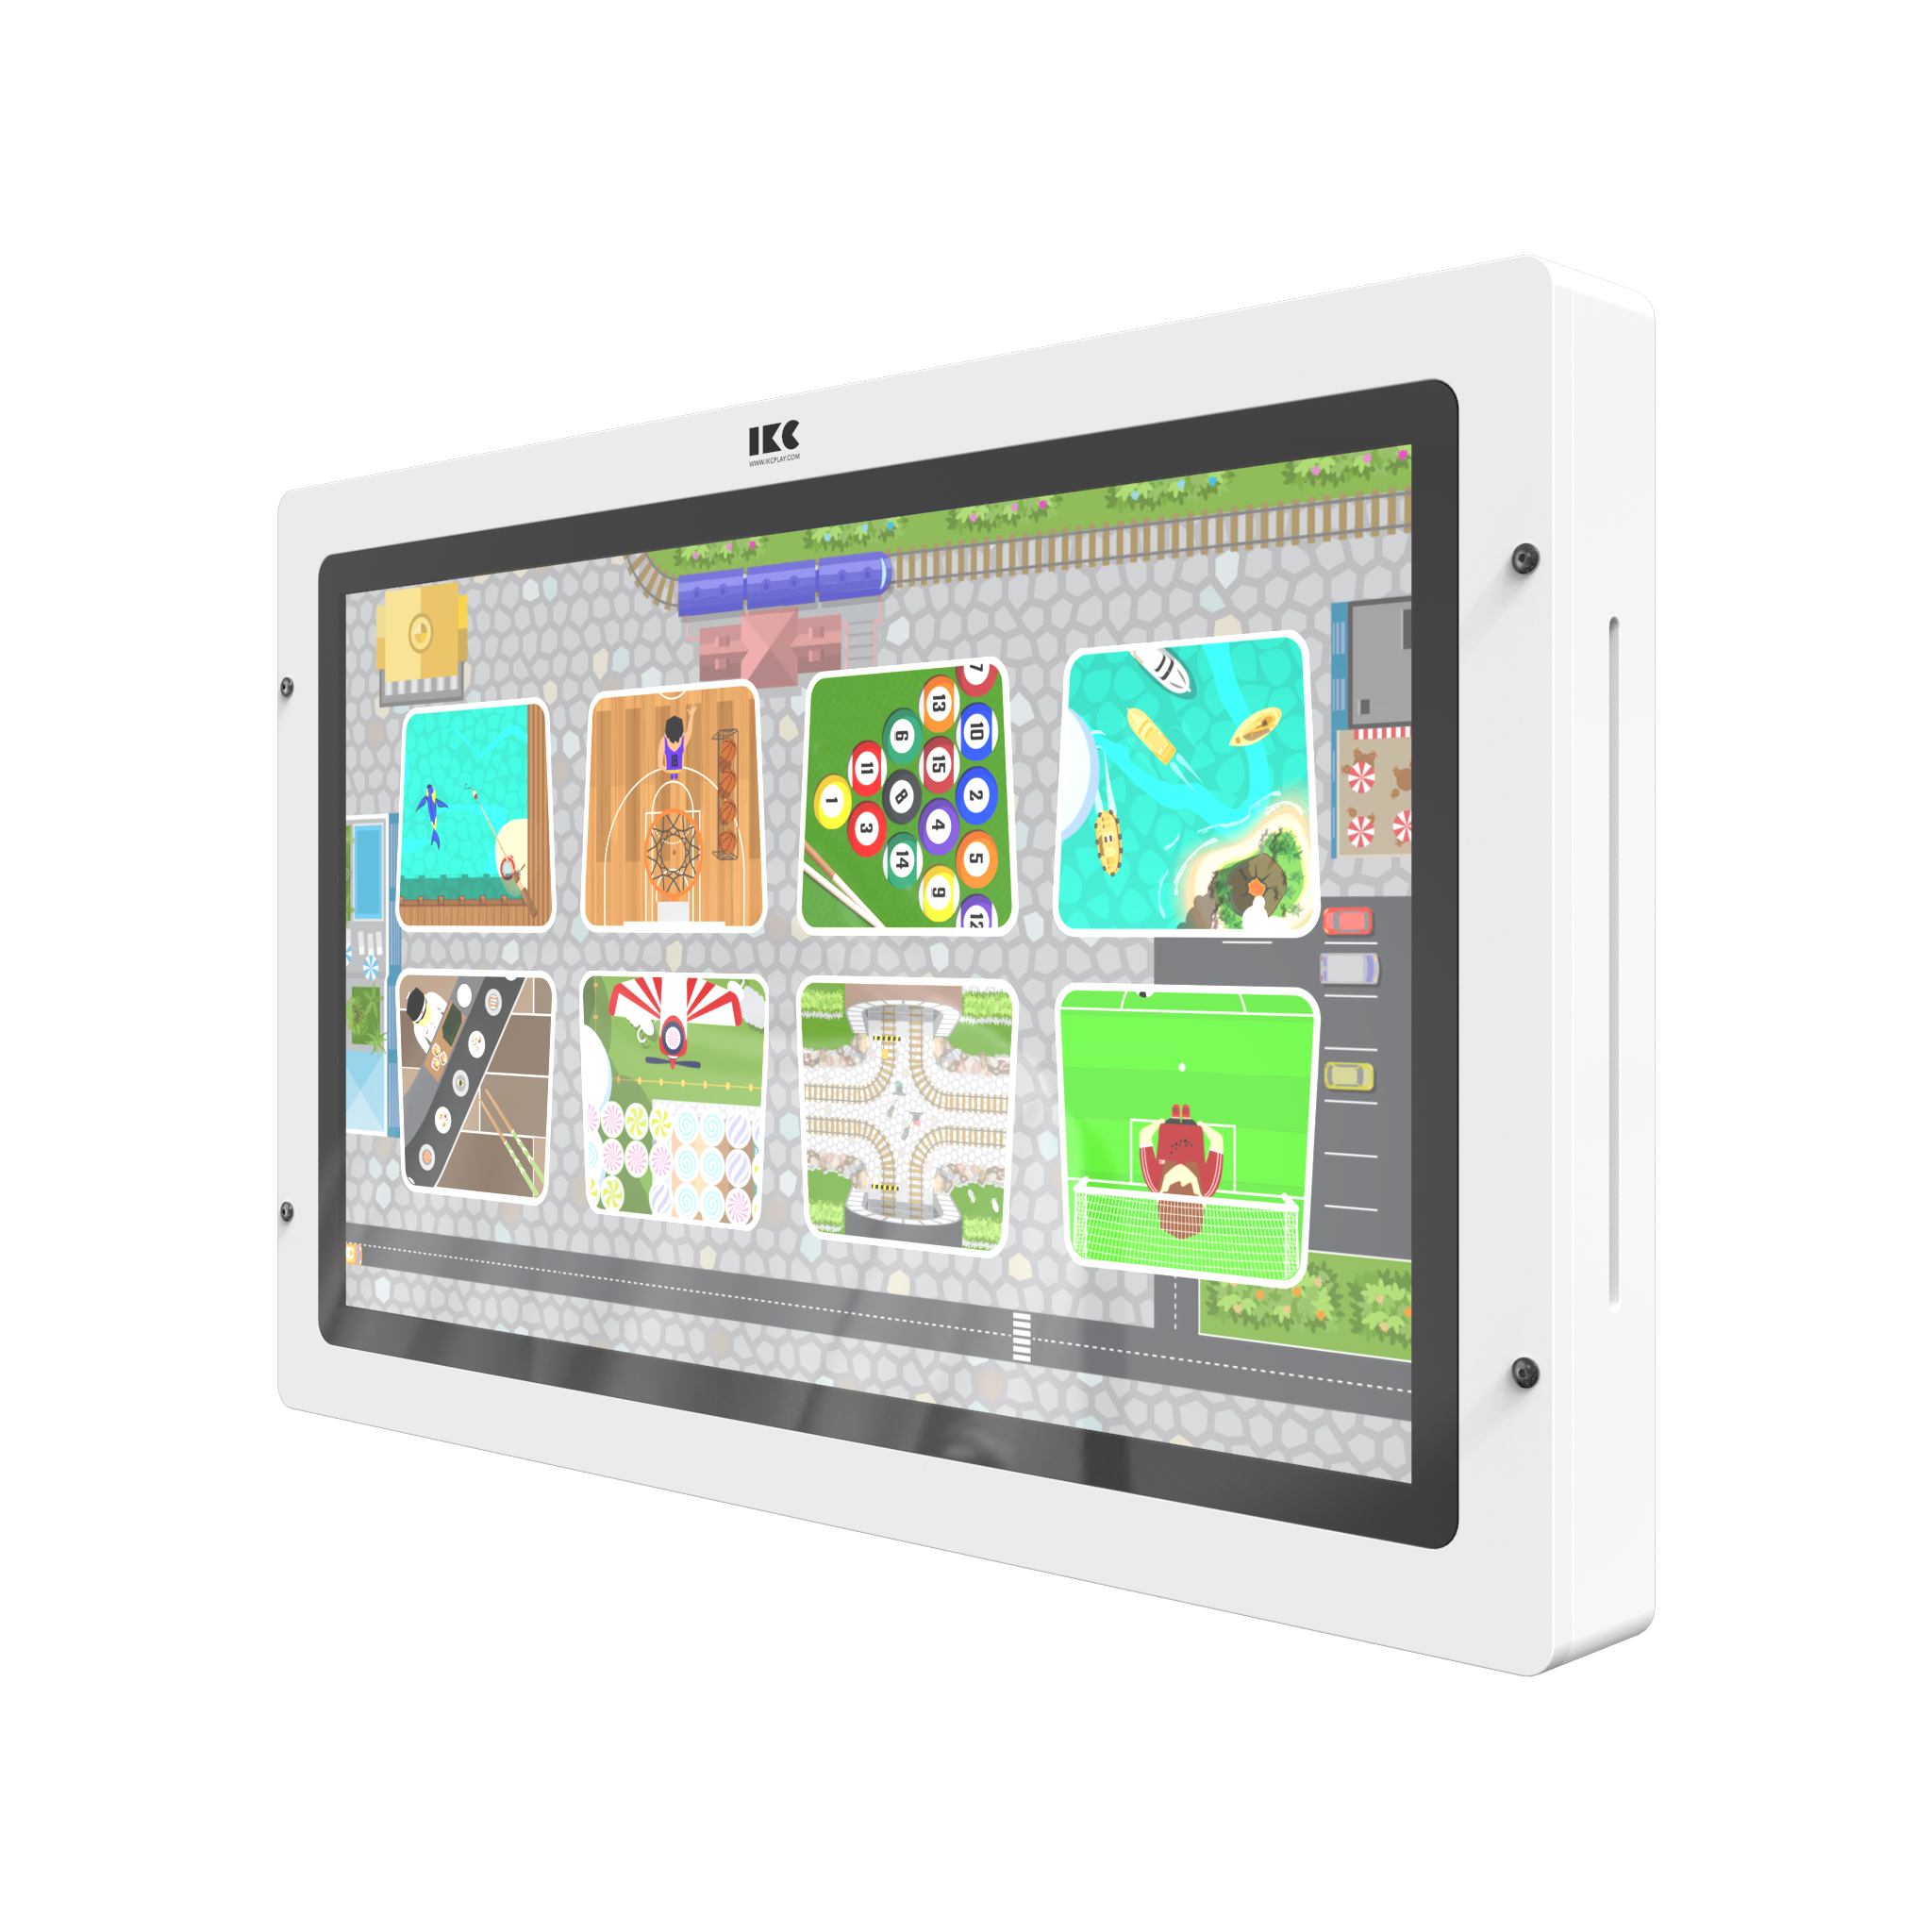 L'image montre un système de jeu interactif Delta 43 inch